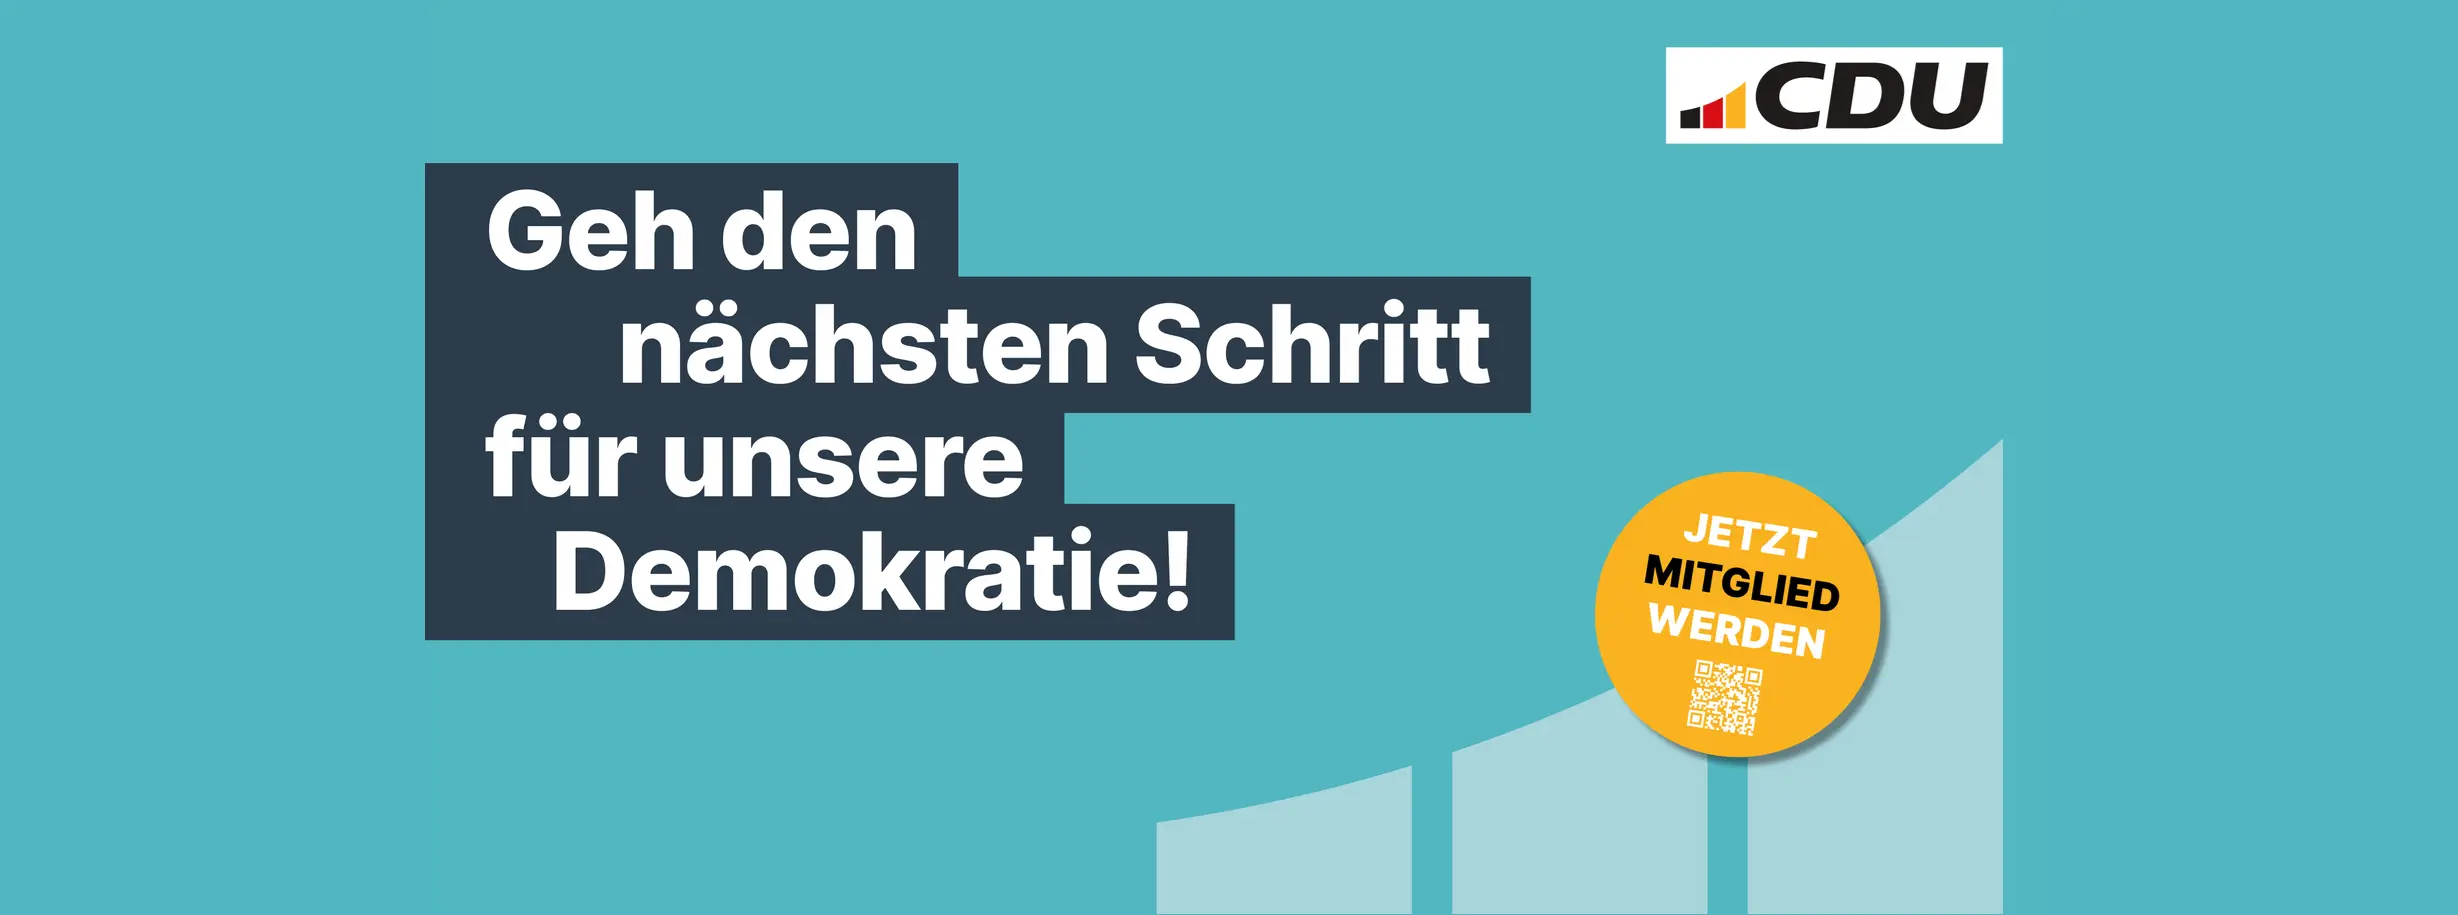 cdu-grüner Hintergrund, CDU Logo, Text: Geh den nächsten Schritt für unsere Demokratie! und ein runder Button mit "Jetzt Mitglied werden", inkl. QR-Code